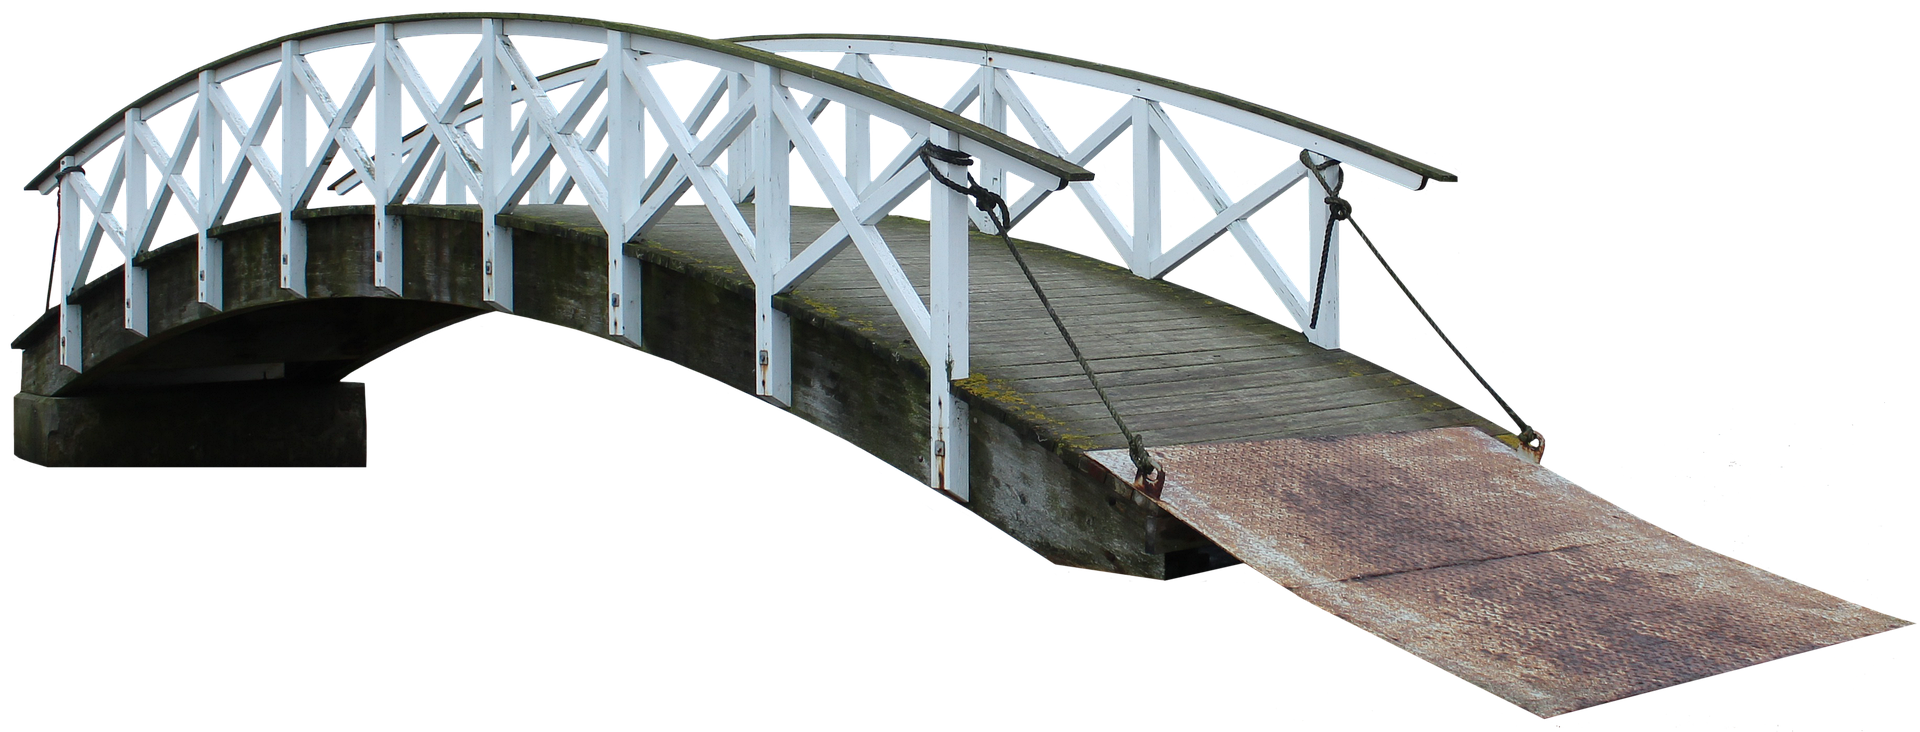 bridge-6834496_1920.png